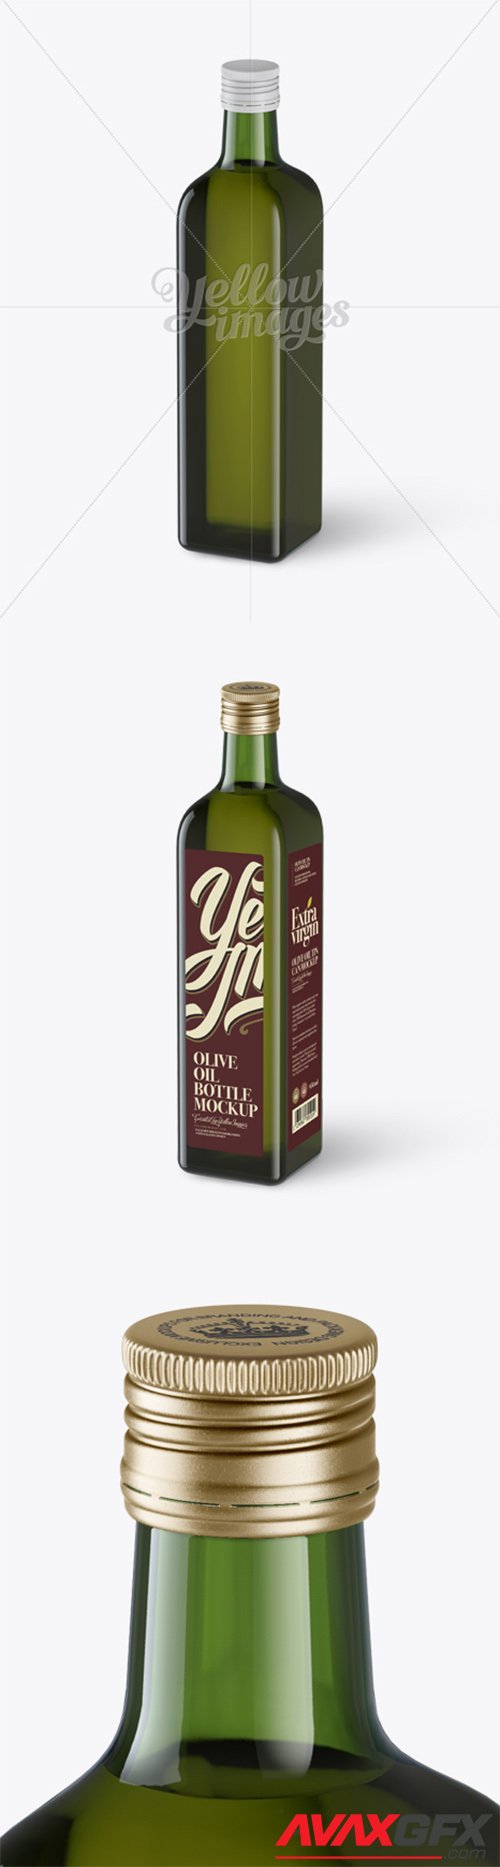 0.75L Green Glass Olive Oil Bottle Mockup - Halfside view (High-Angle Shot) 13927